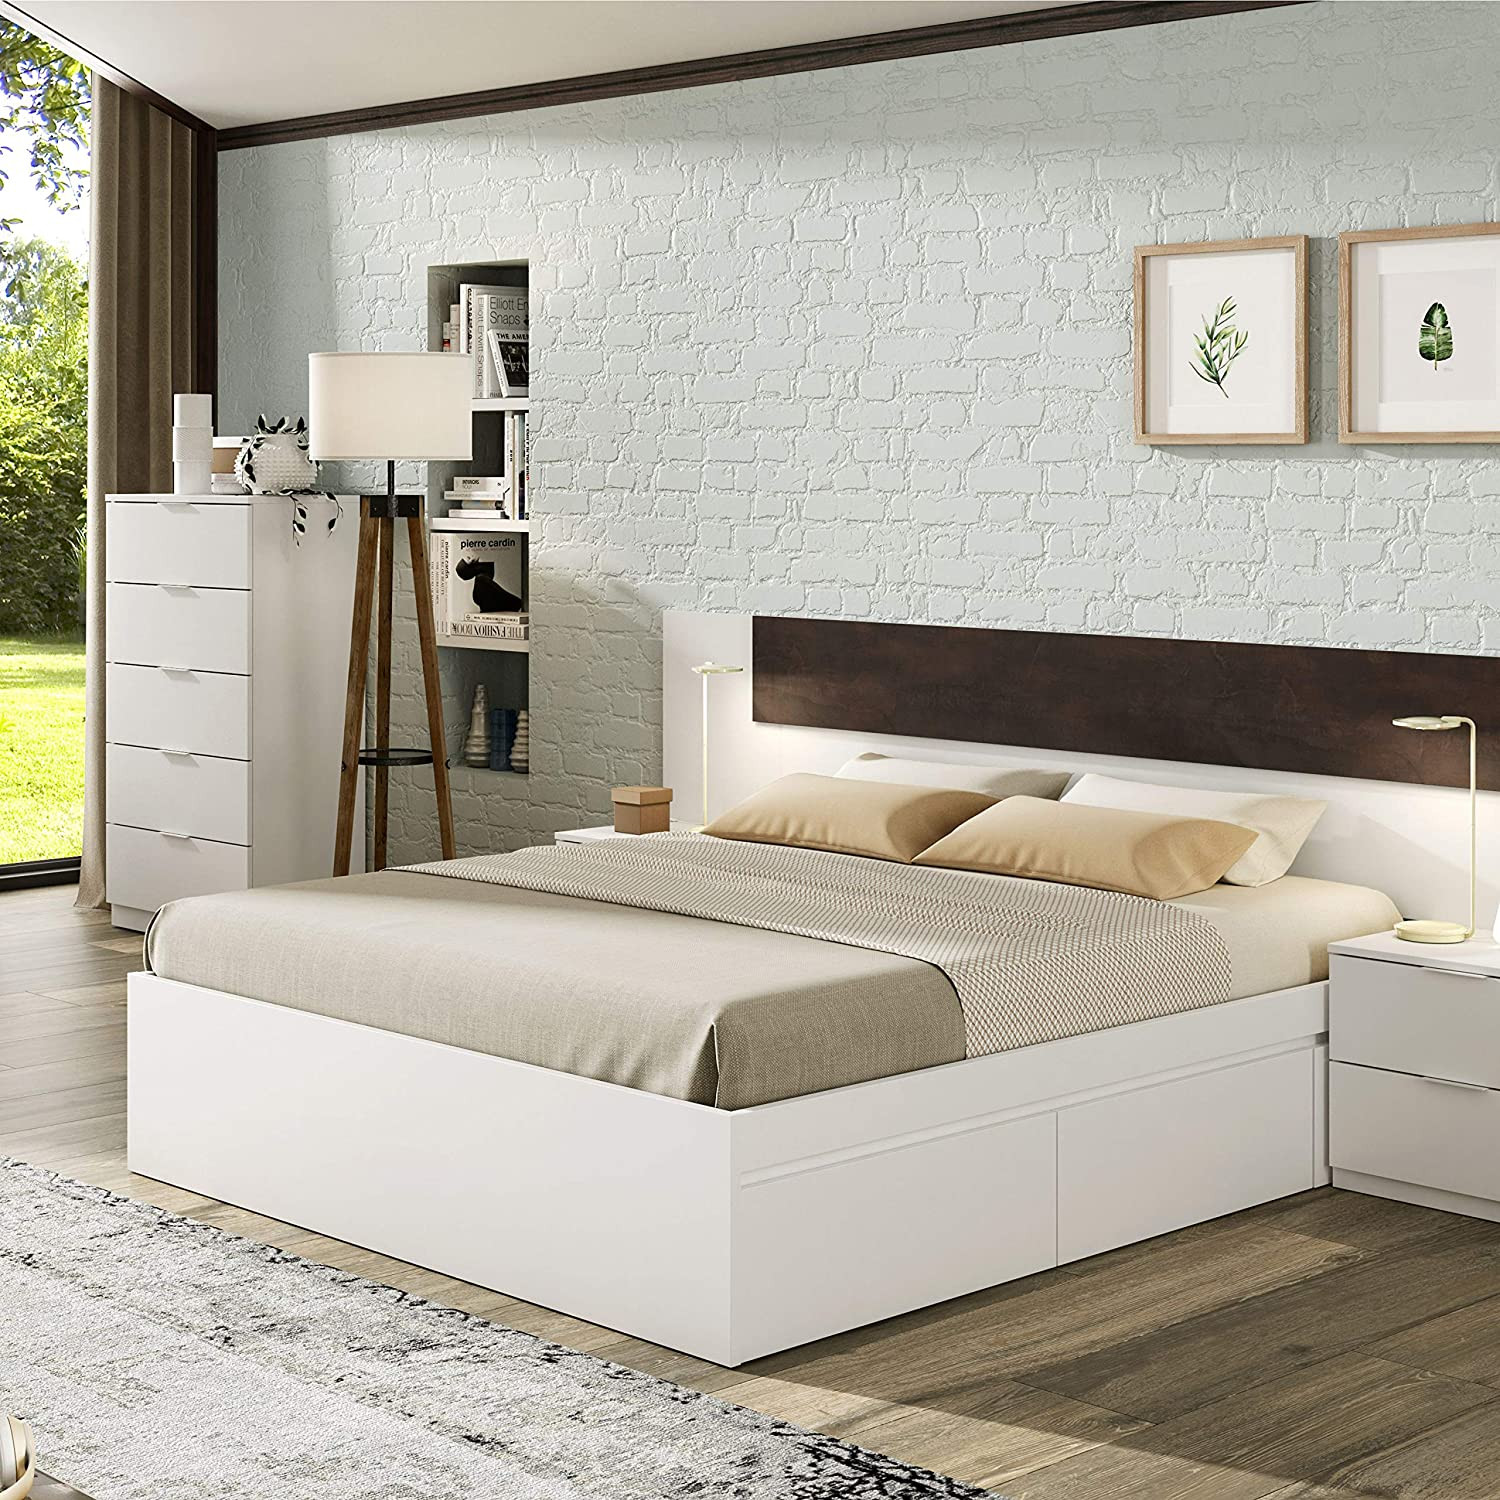 Cómoda blanca para dormitorio con 5 cajones, cómoda alta para